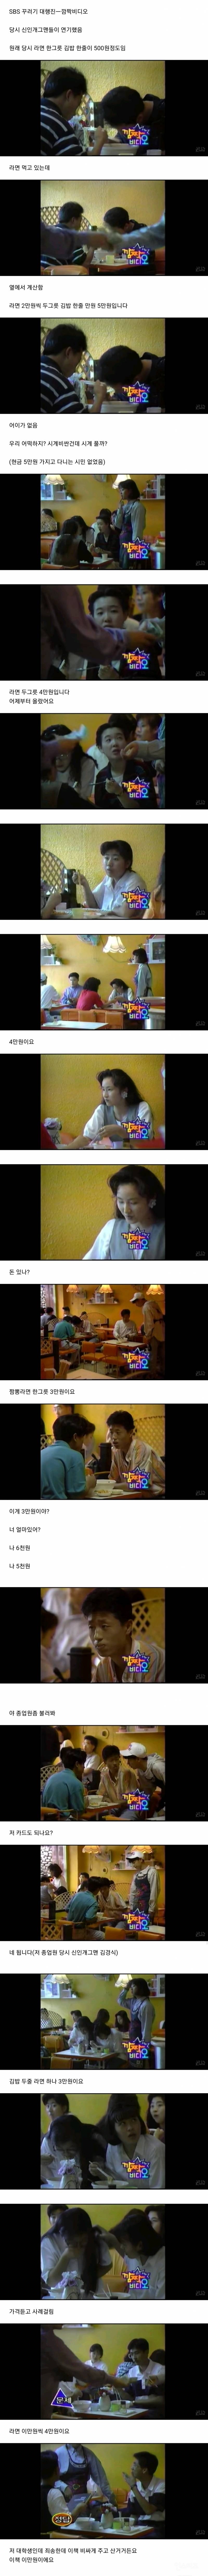 1992년 당시 김밥 한 줄에 만원 라면 한 그릇에 2만원이라고 했을 시 사람들의 반응